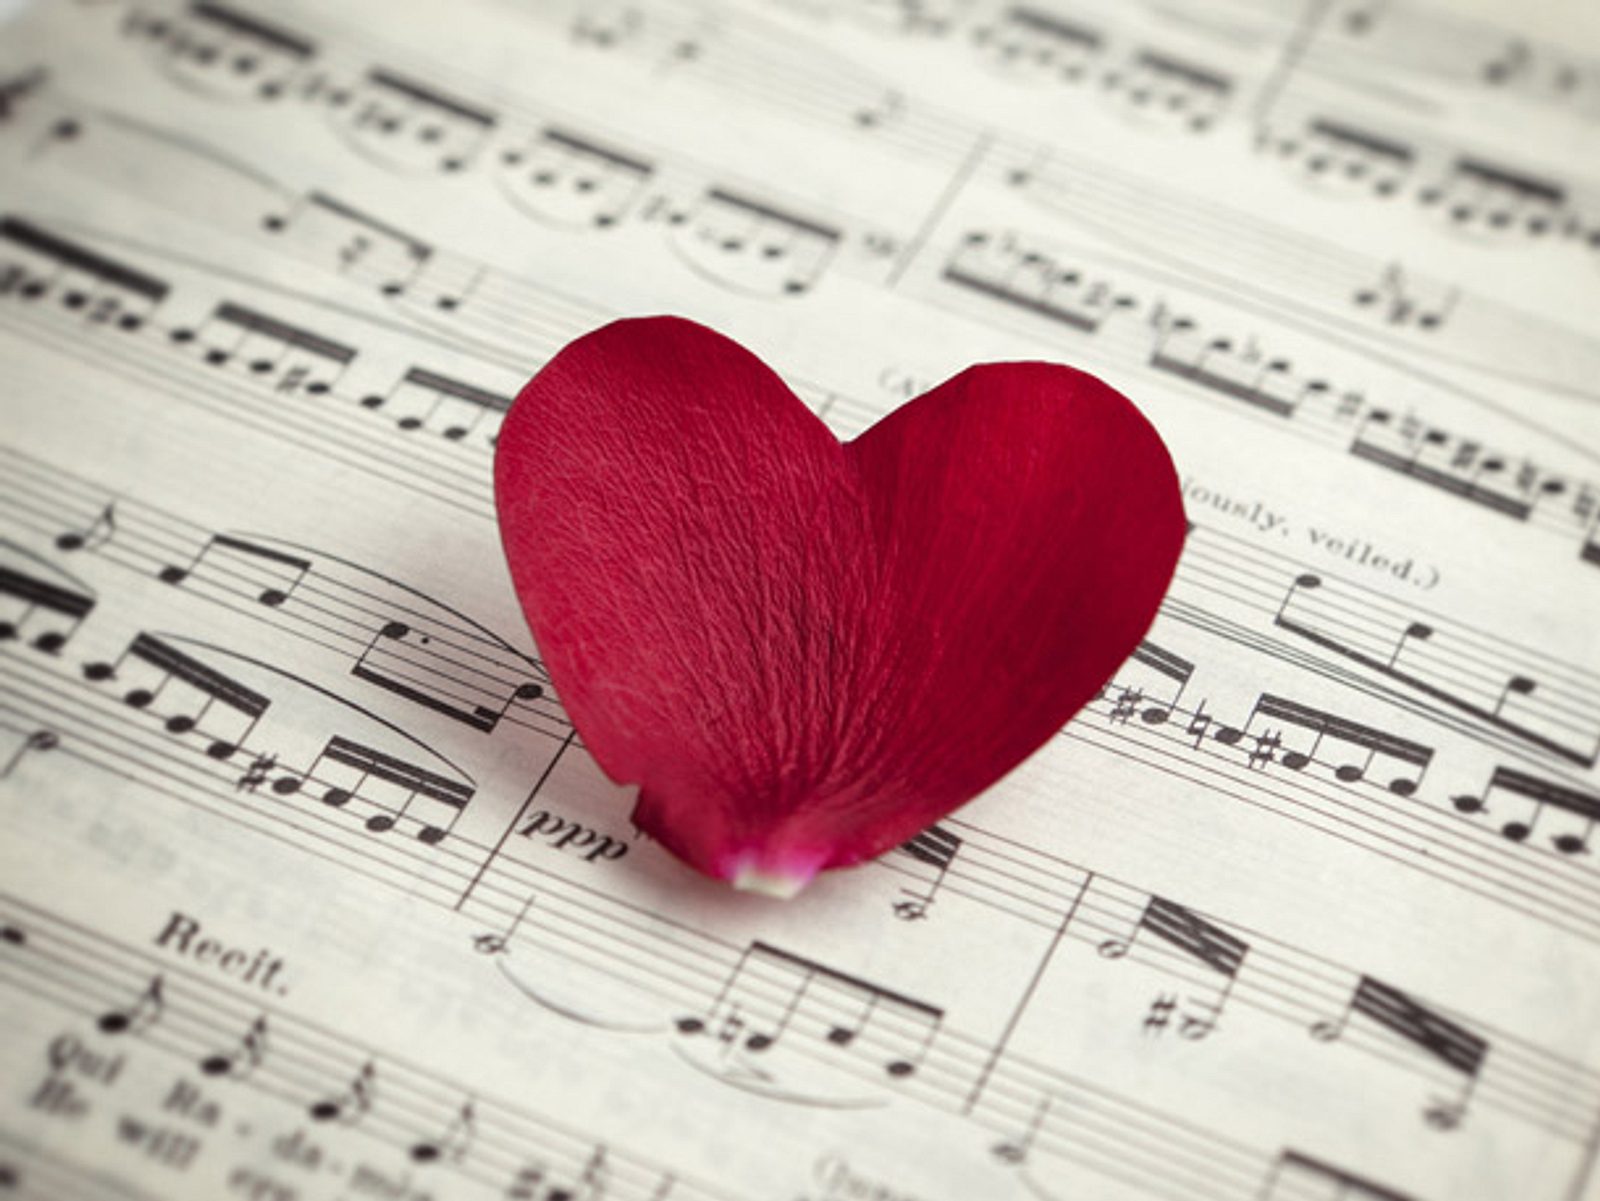 Песня про любовь на телефон. Музыка любви. Красивые картинки про любовь. Романтично и музыкально. Композиция "это любовь".